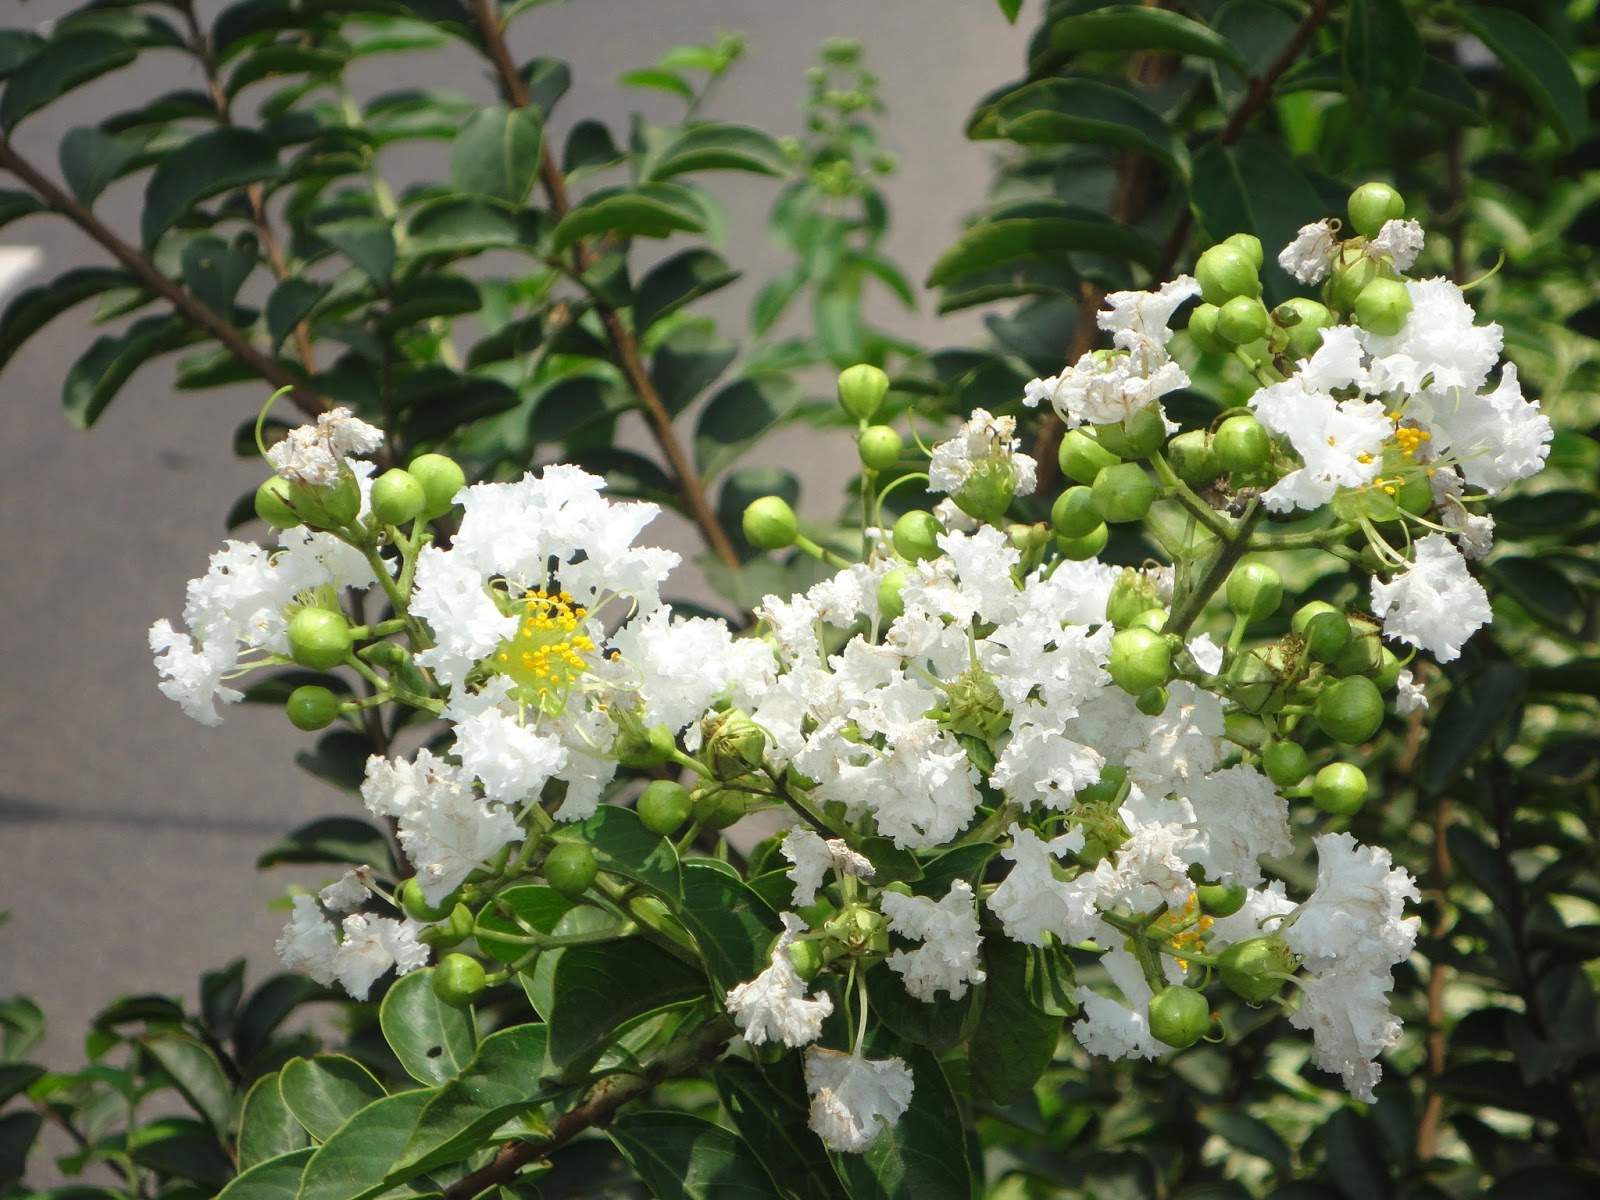 Hoa Tường Vi trắng: Nhìn vào hình ảnh này, bạn sẽ được bao quanh bởi những cánh hoa tươi trắng của hoa Tường Vi. Vẻ đẹp thanh khiết của chúng sẽ khiến bạn cảm thấy nhẹ nhàng và tinh tế. Hãy tìm hiểu thêm về loại hoa này để cảm nhận được sức hấp dẫn của chúng nhé!